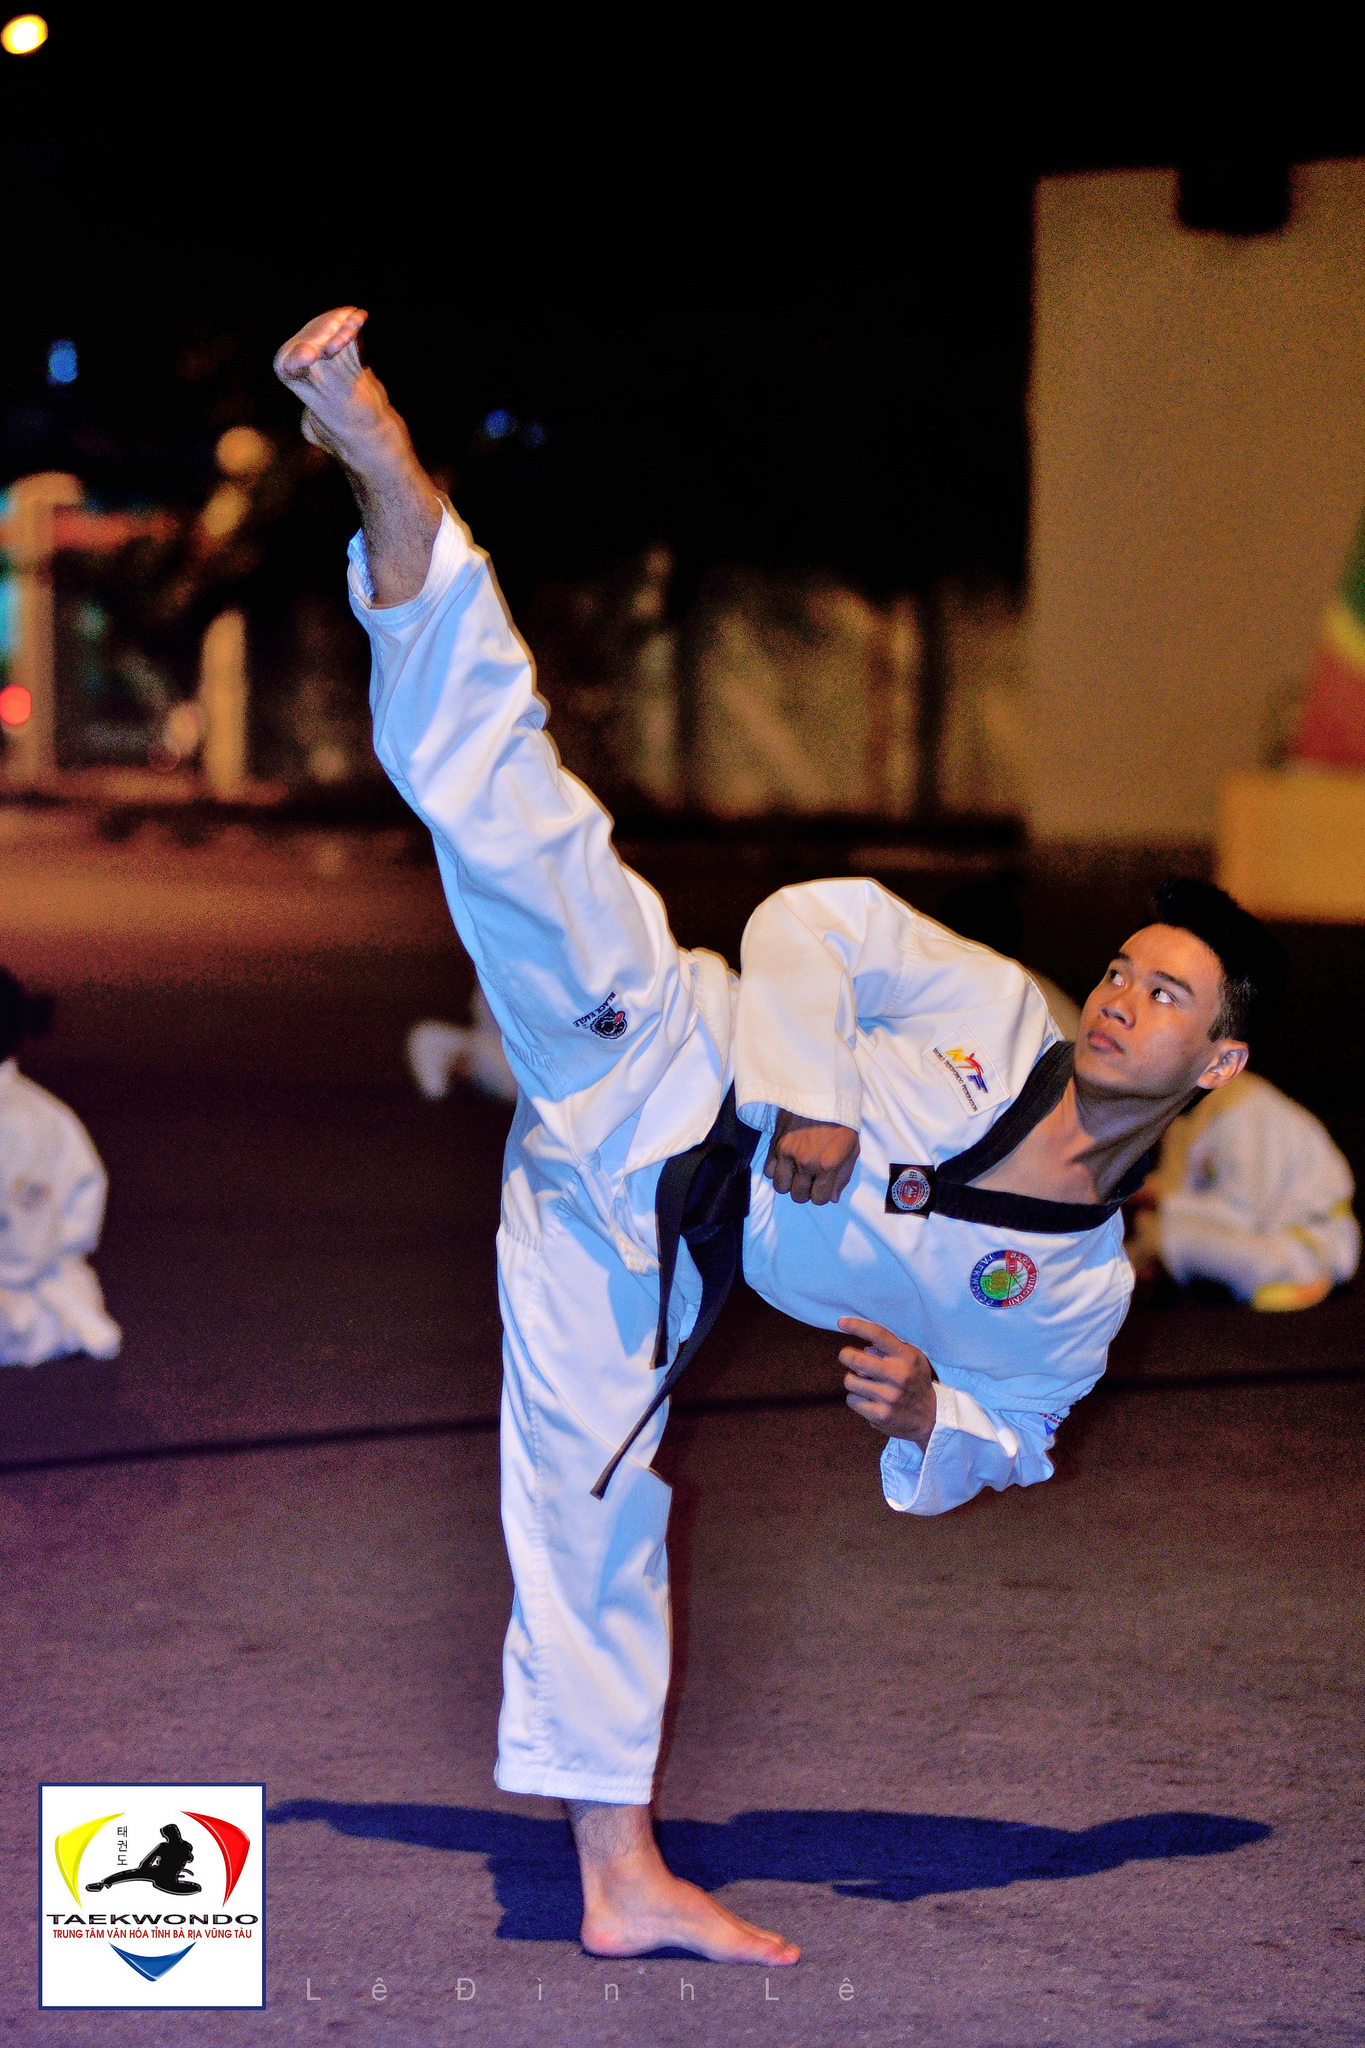 Cách học võ taekwondo cơ bản và các lưu ý khi tập luyện